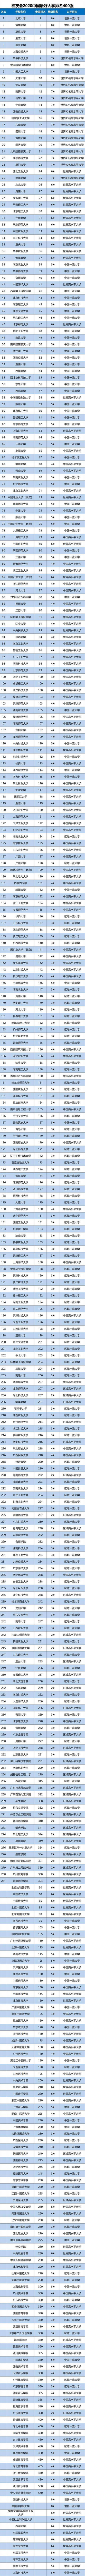 2020税收全国高校排名_2020年中国大学生均学校收入排名首次公布!深圳哪所